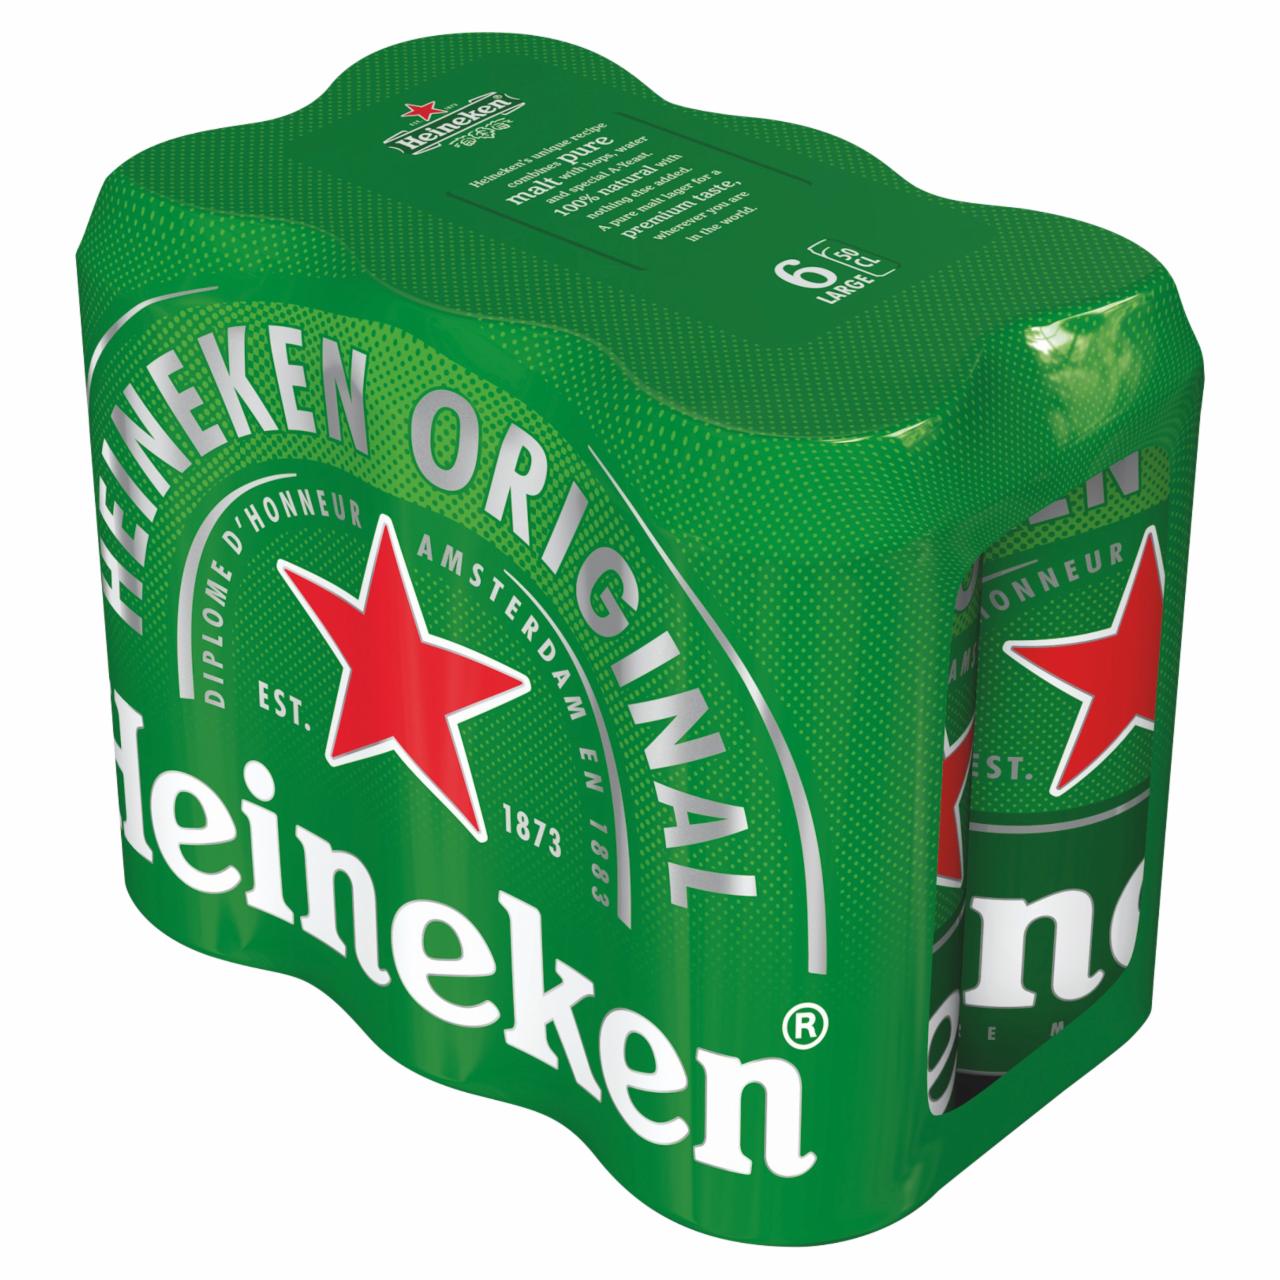 Képek - Heineken minőségi világos sör 5% 6 x 0,5 l doboz